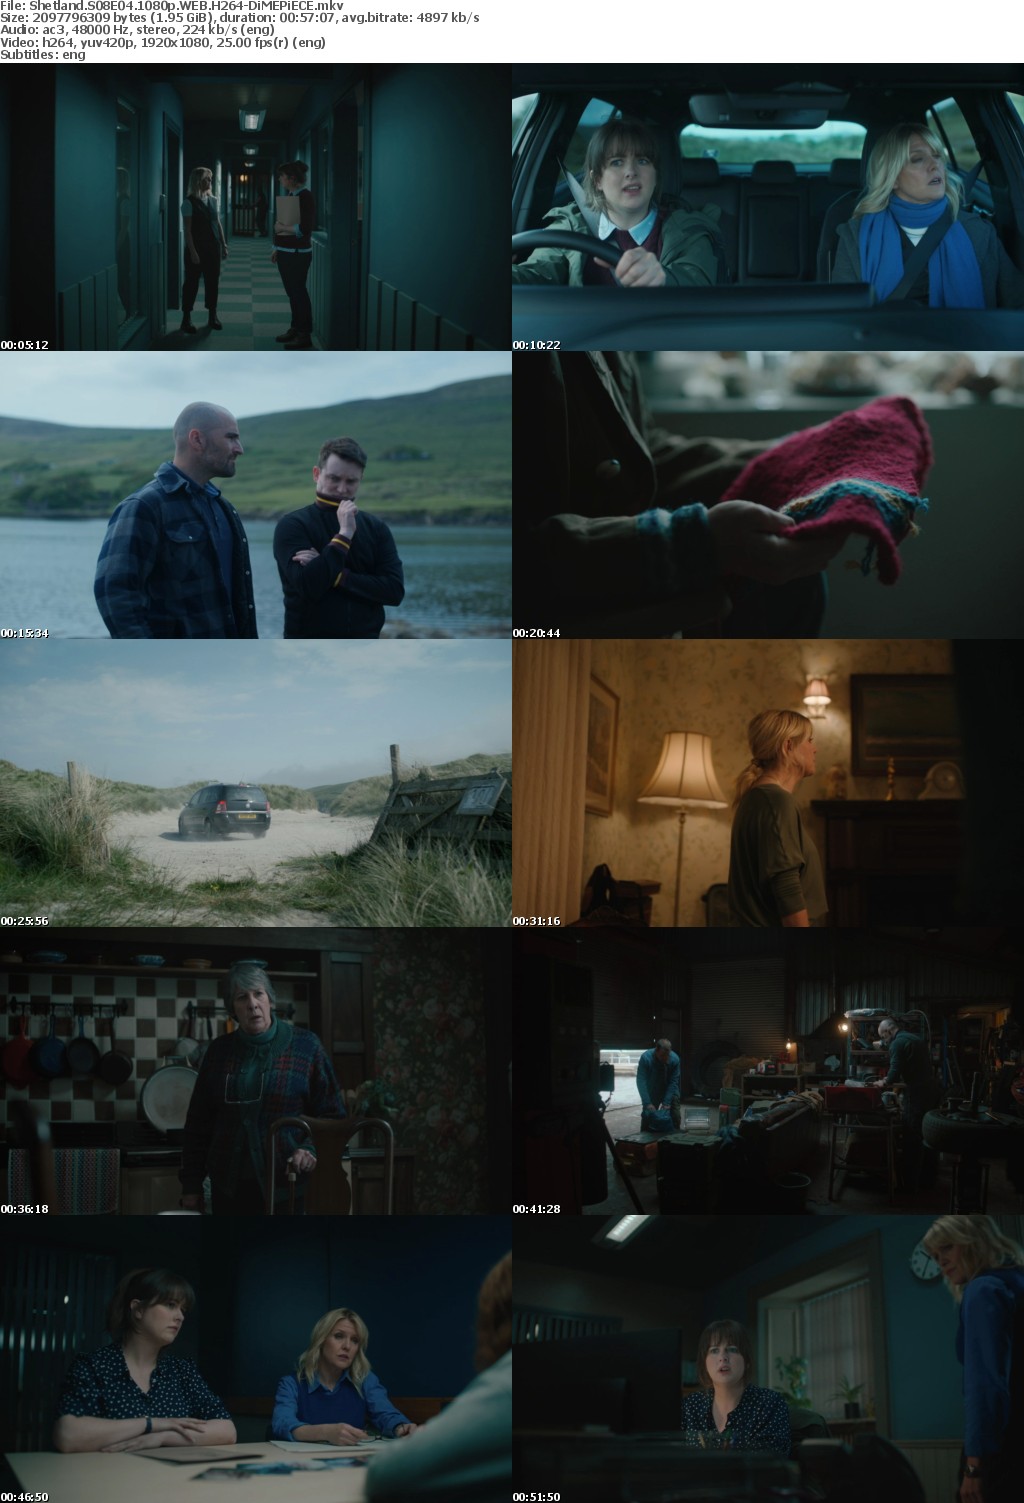 Shetland S08E04 1080p WEB H264-DiMEPiECE